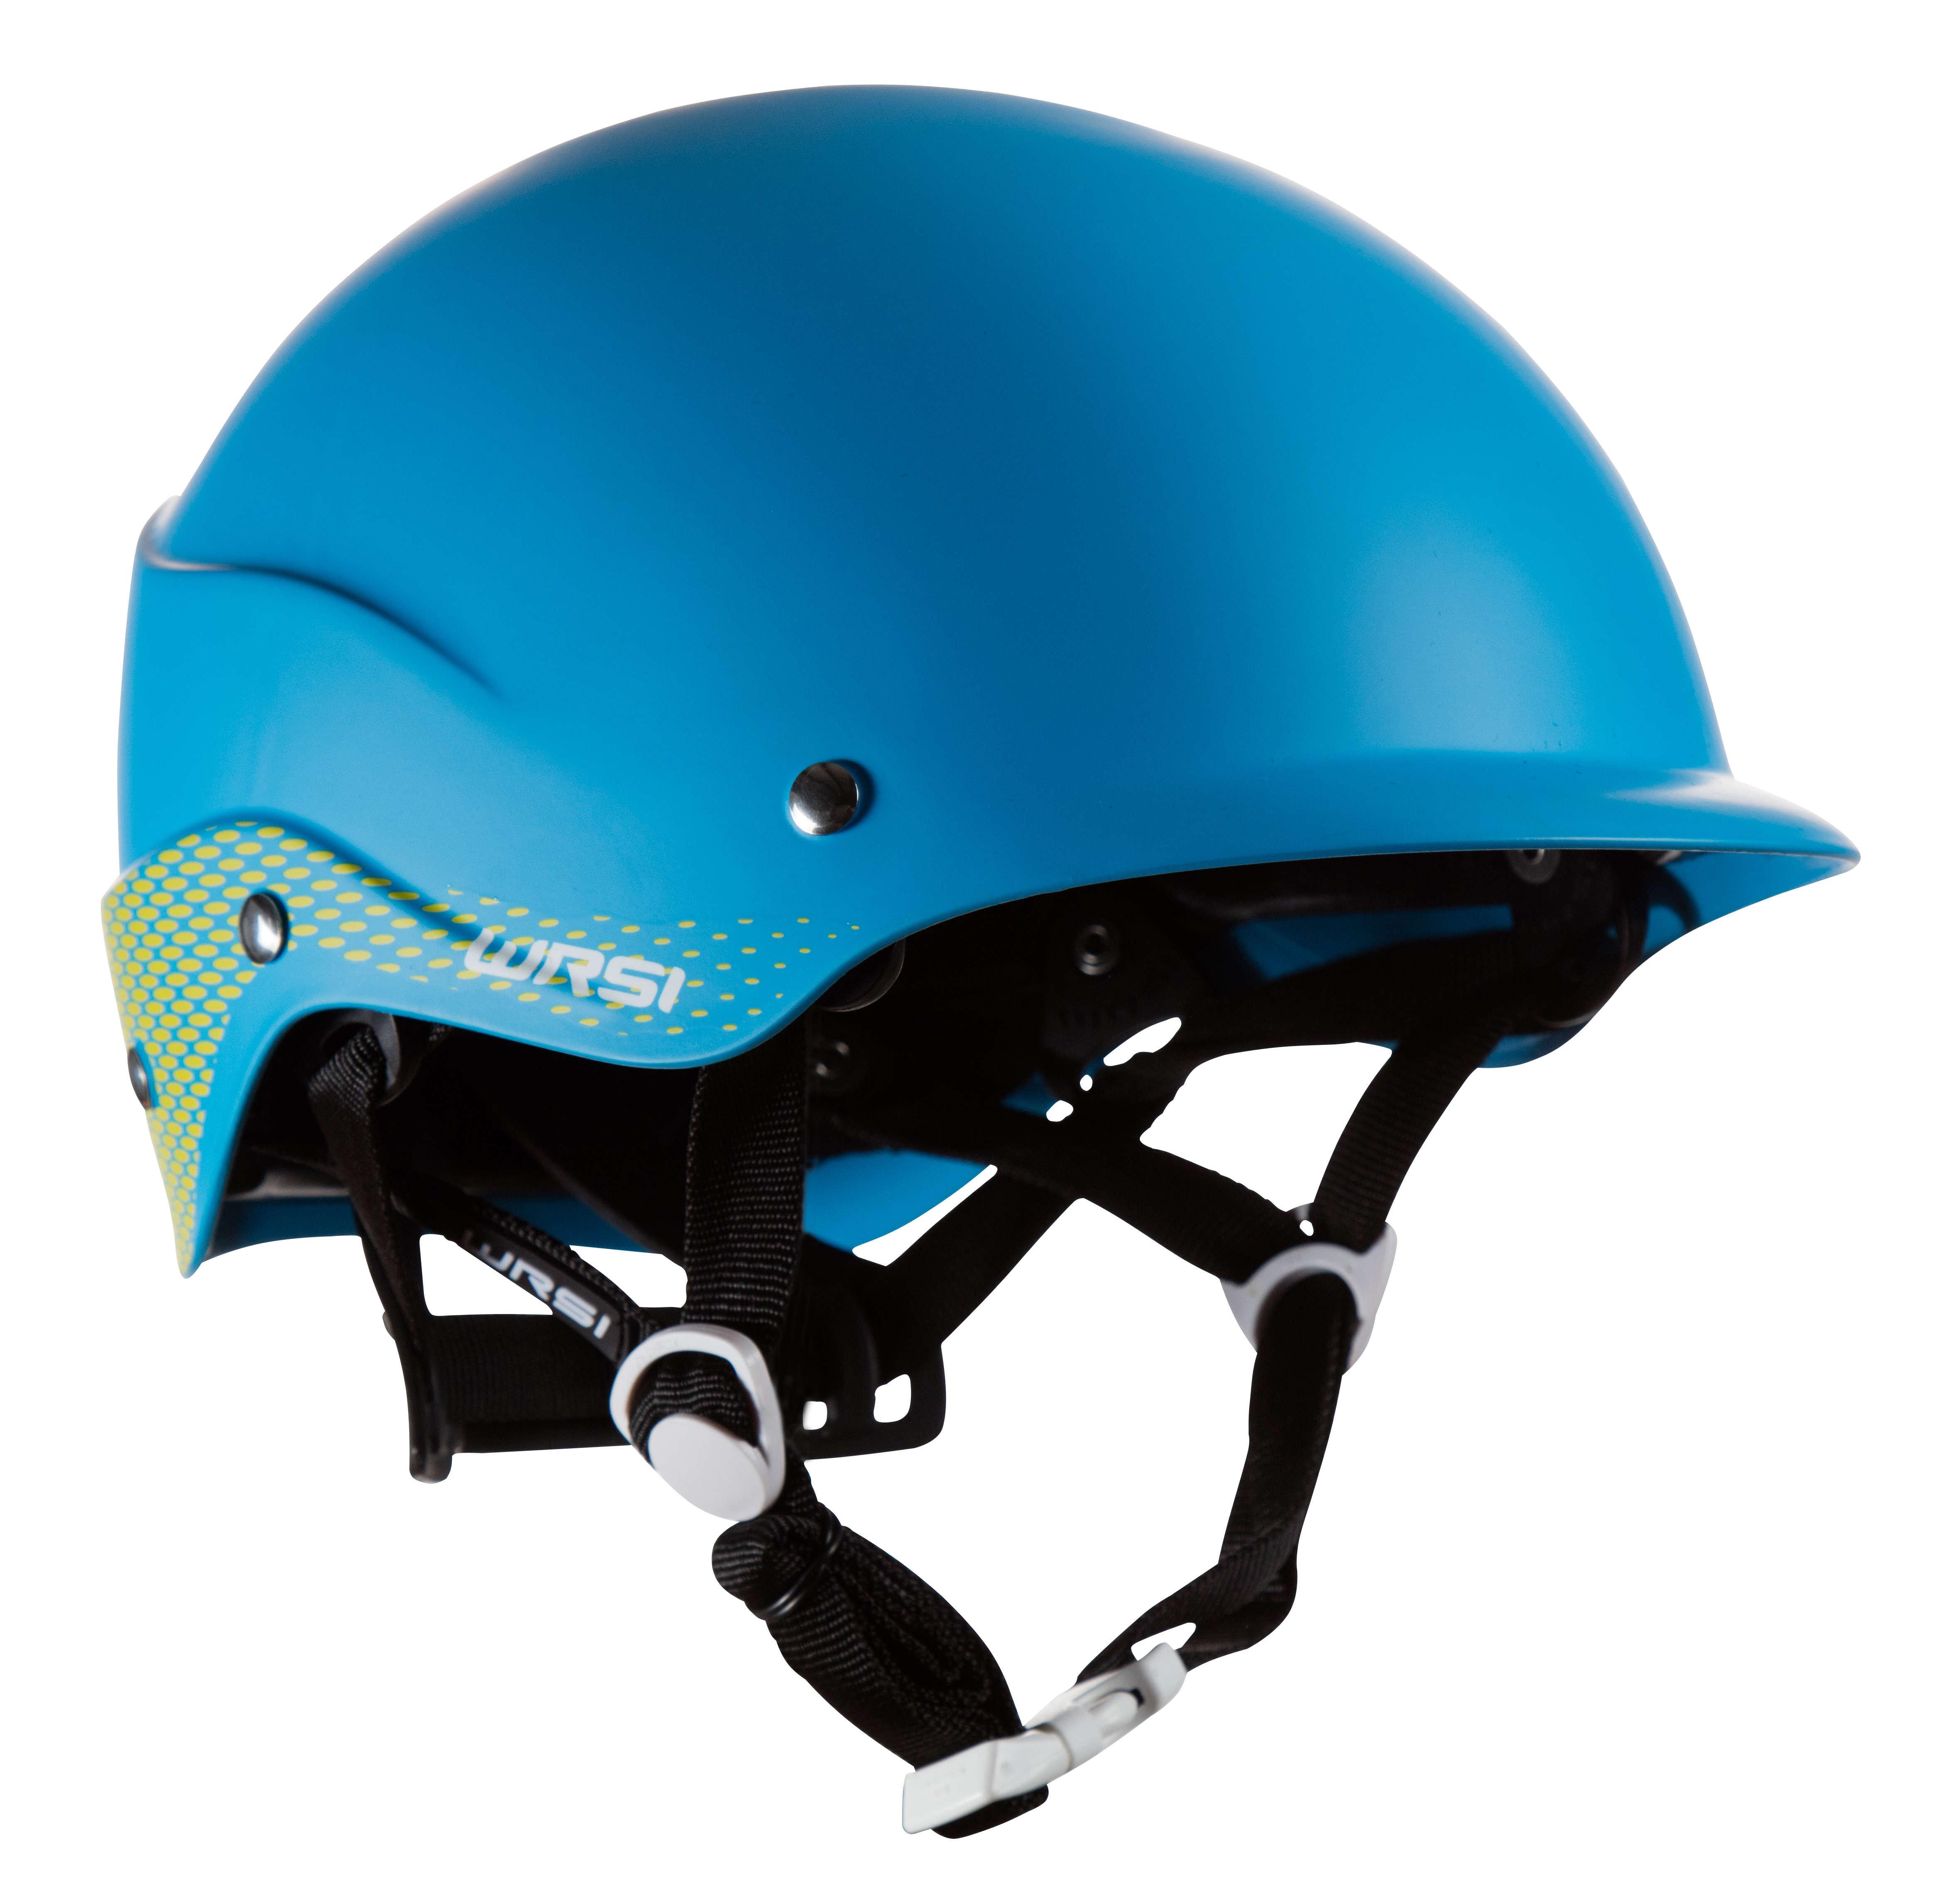 NRS_WRSI Текущий шлем